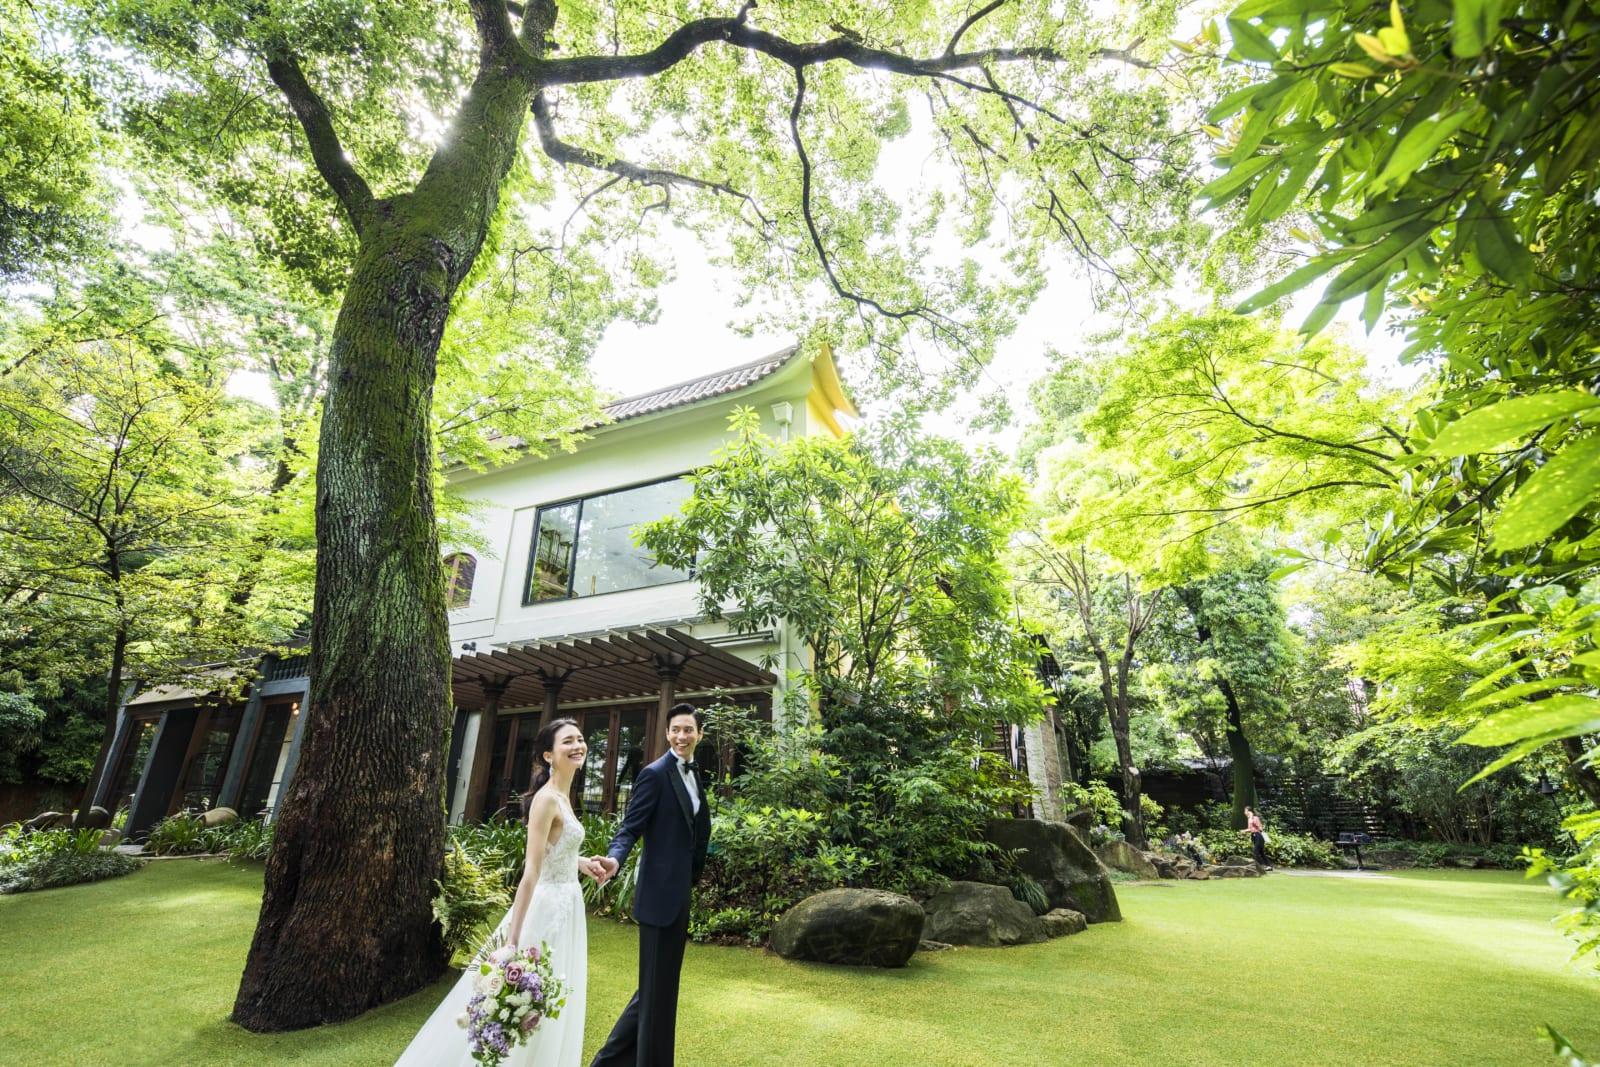 ベストレート保証 2万円婚礼試食 チャペル ウェディング体験フェア ザ ナンザンハウス The Nanzan House